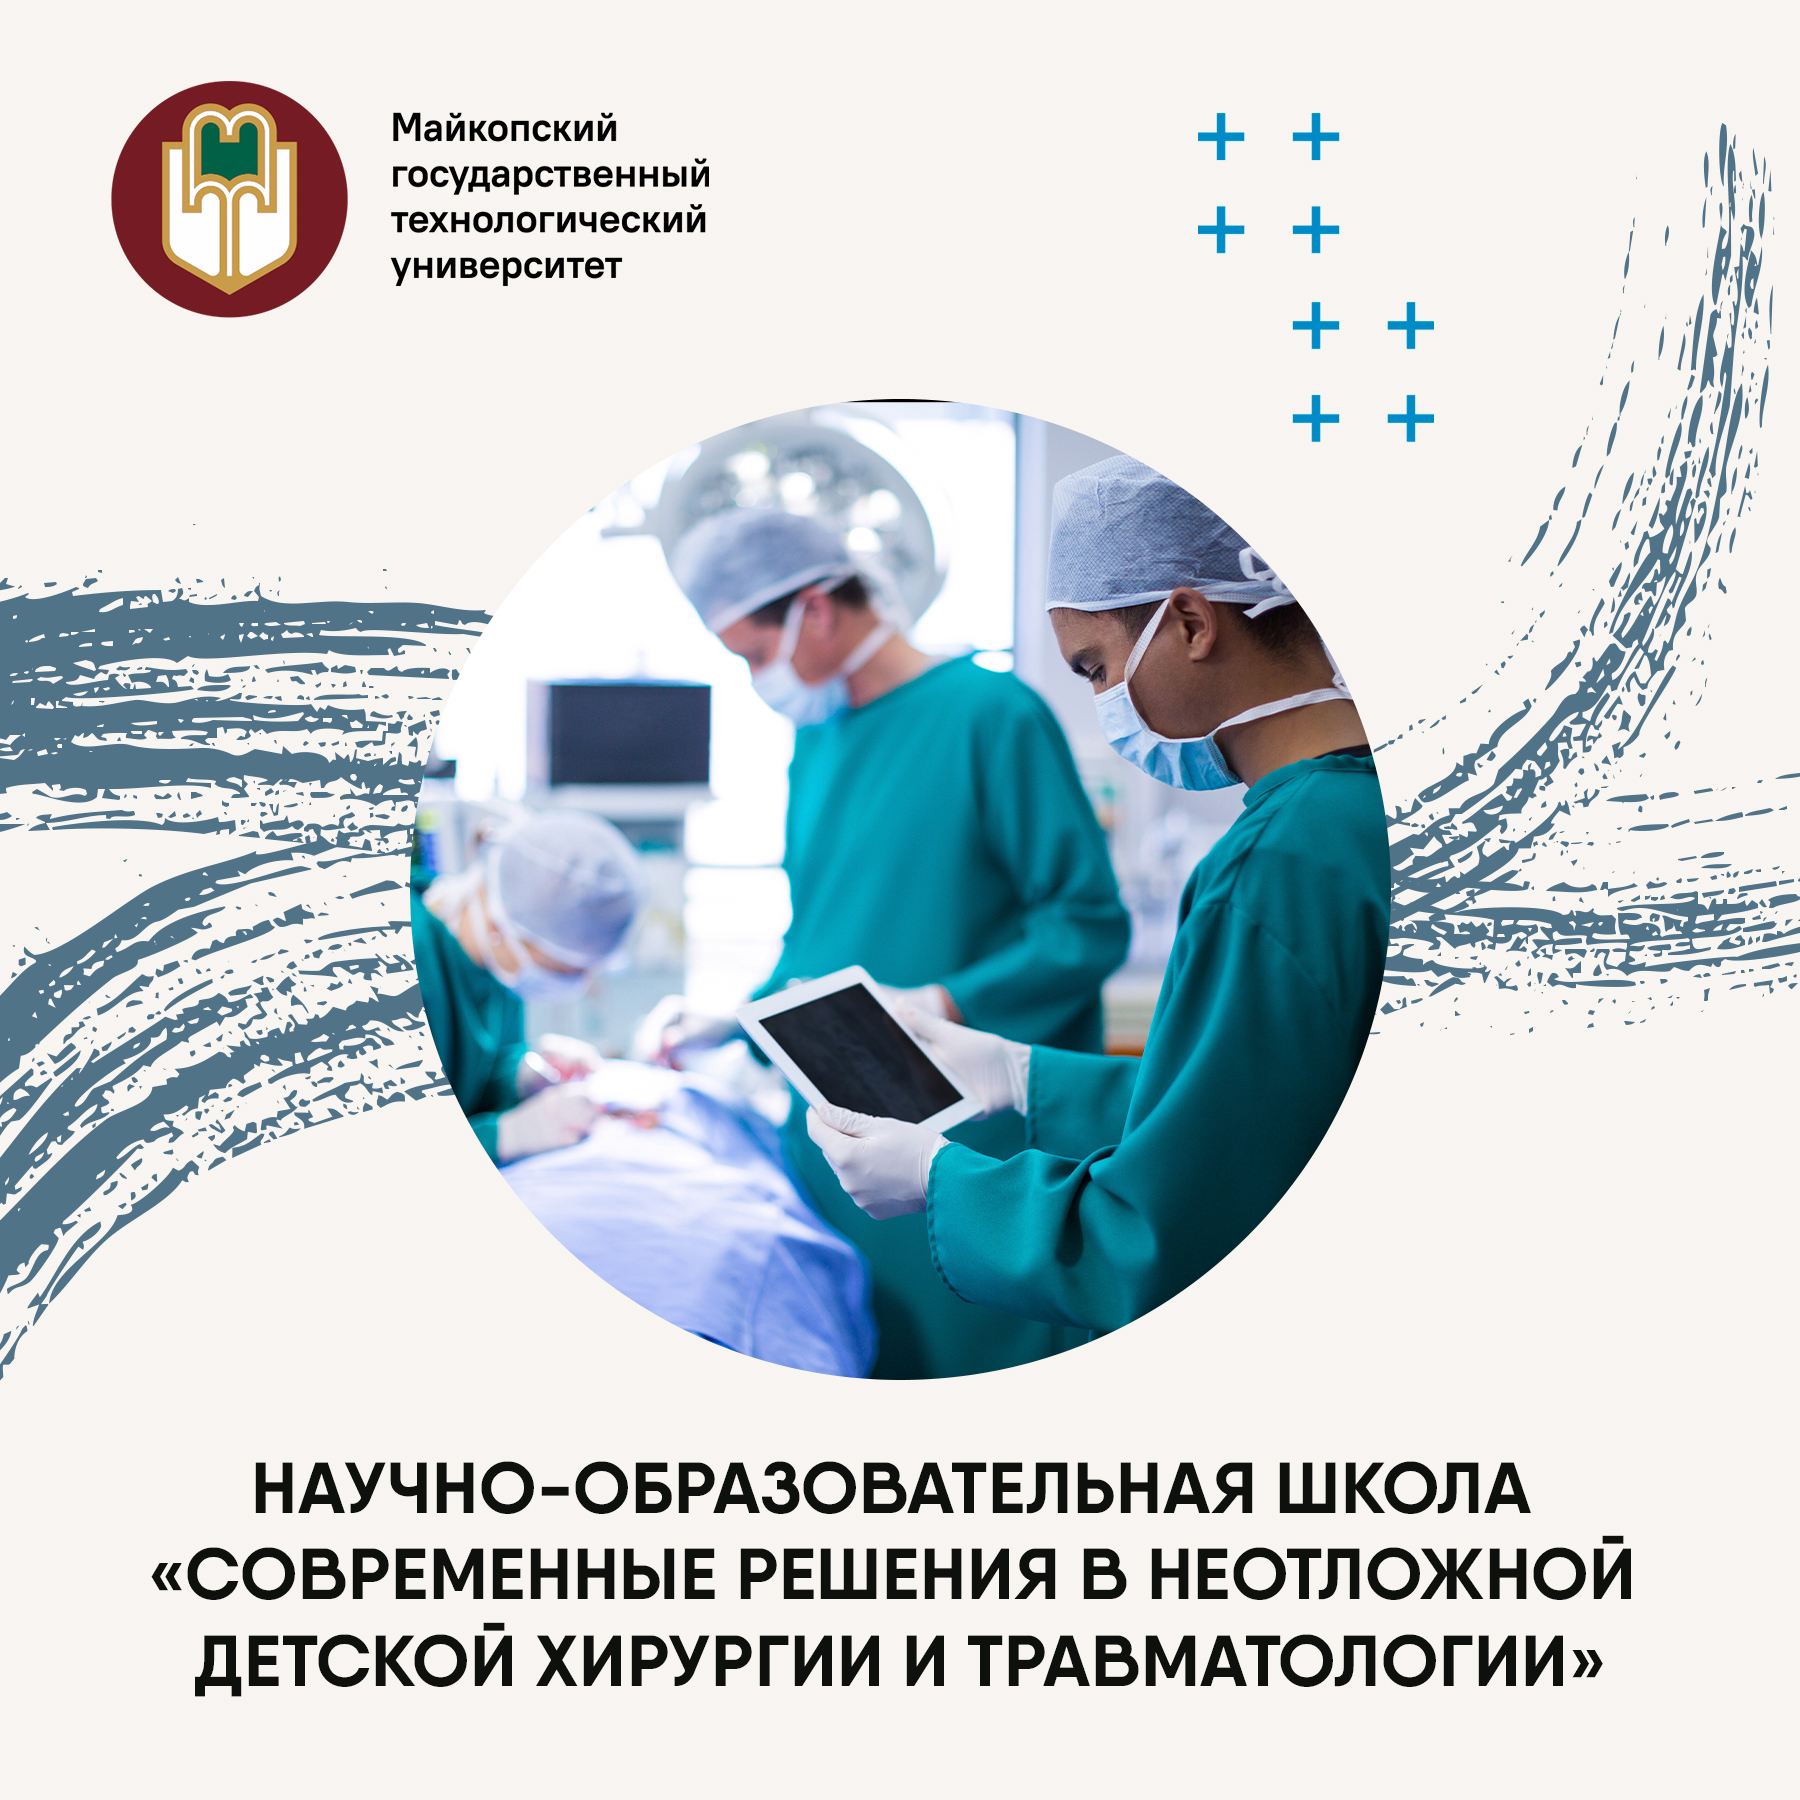 Научно-образовательная школа по детской хирургии и травматологии пройдет в МГТУ!